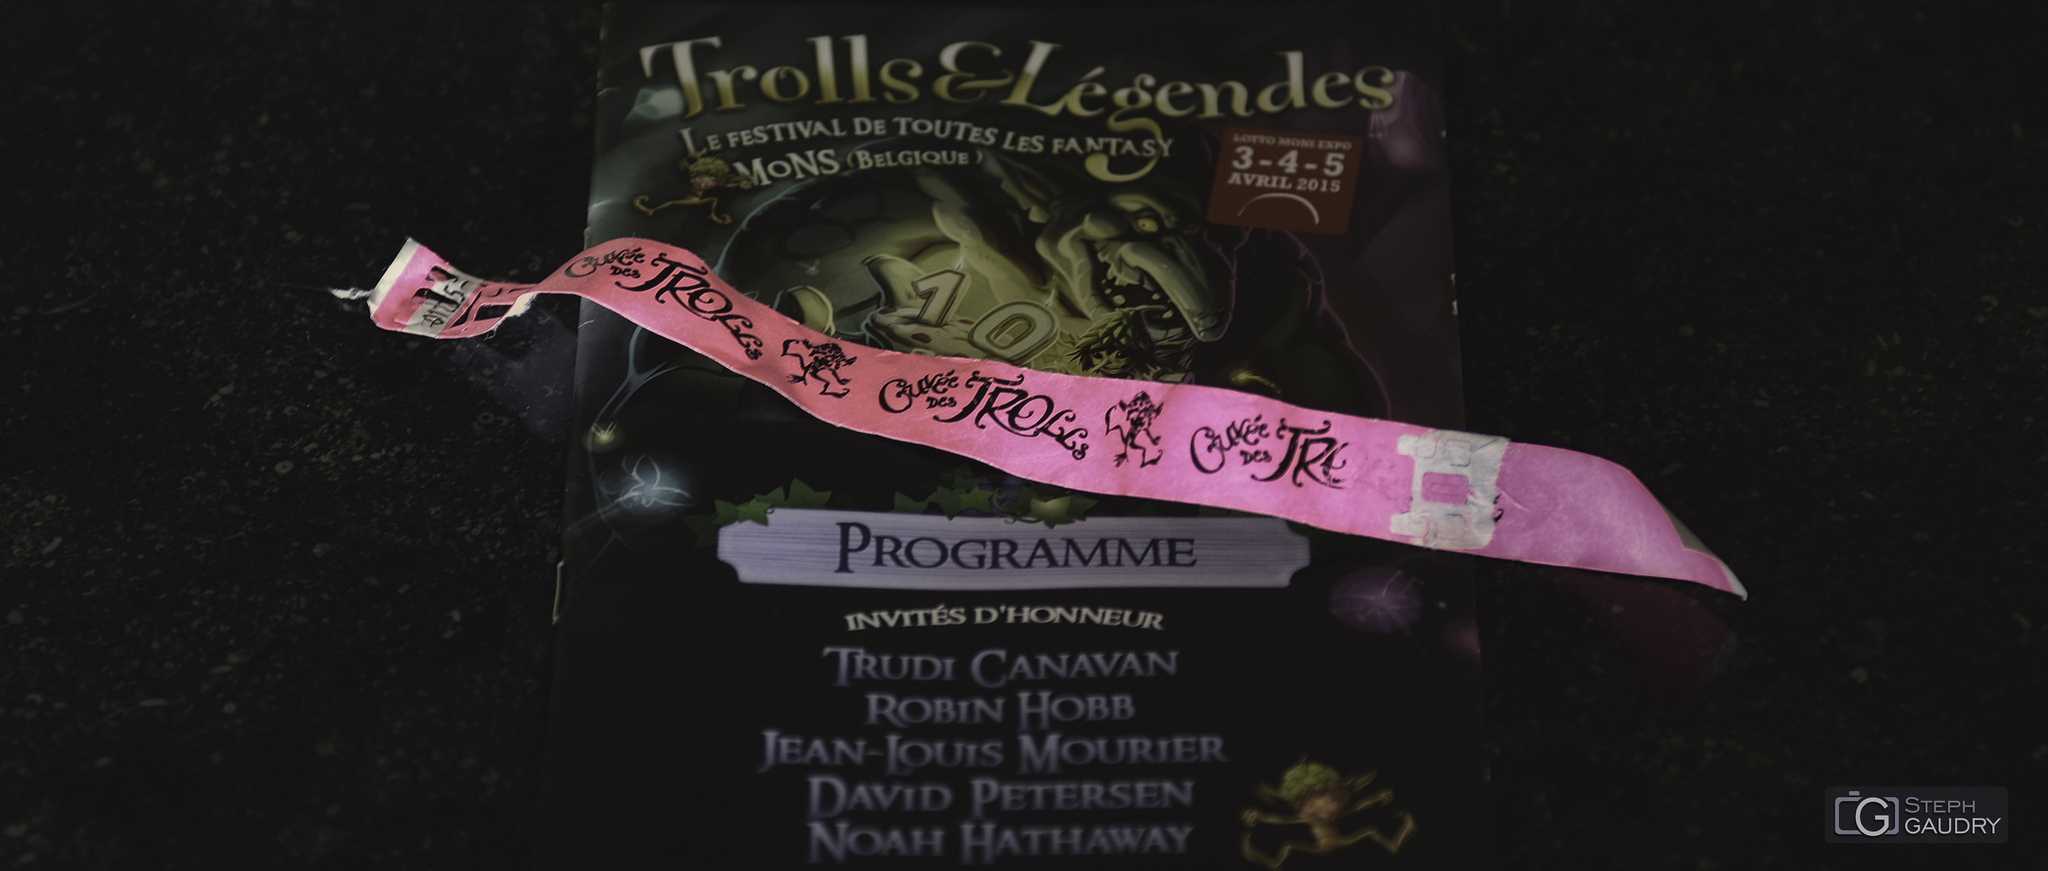 Trolls & Légendes 2015 [Click to start slideshow]